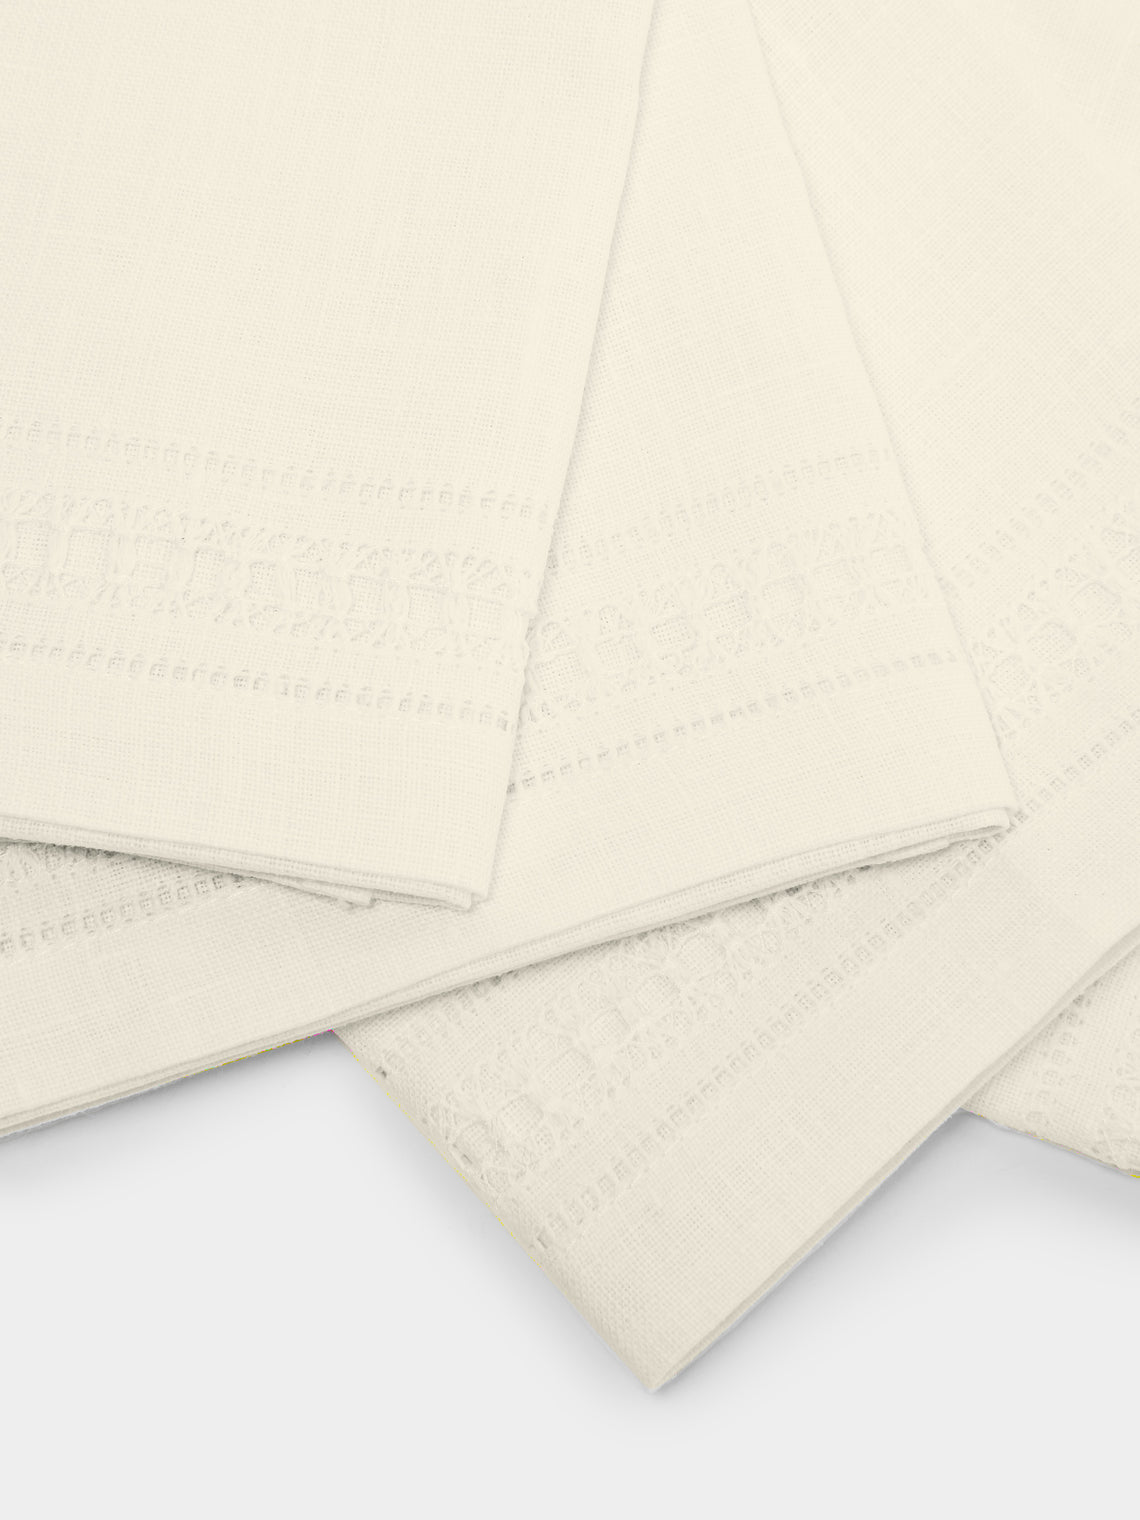 Los Encajeros - Frailes Lace-Appliqué Cotton Guest Towels (Set of 4) -  - ABASK